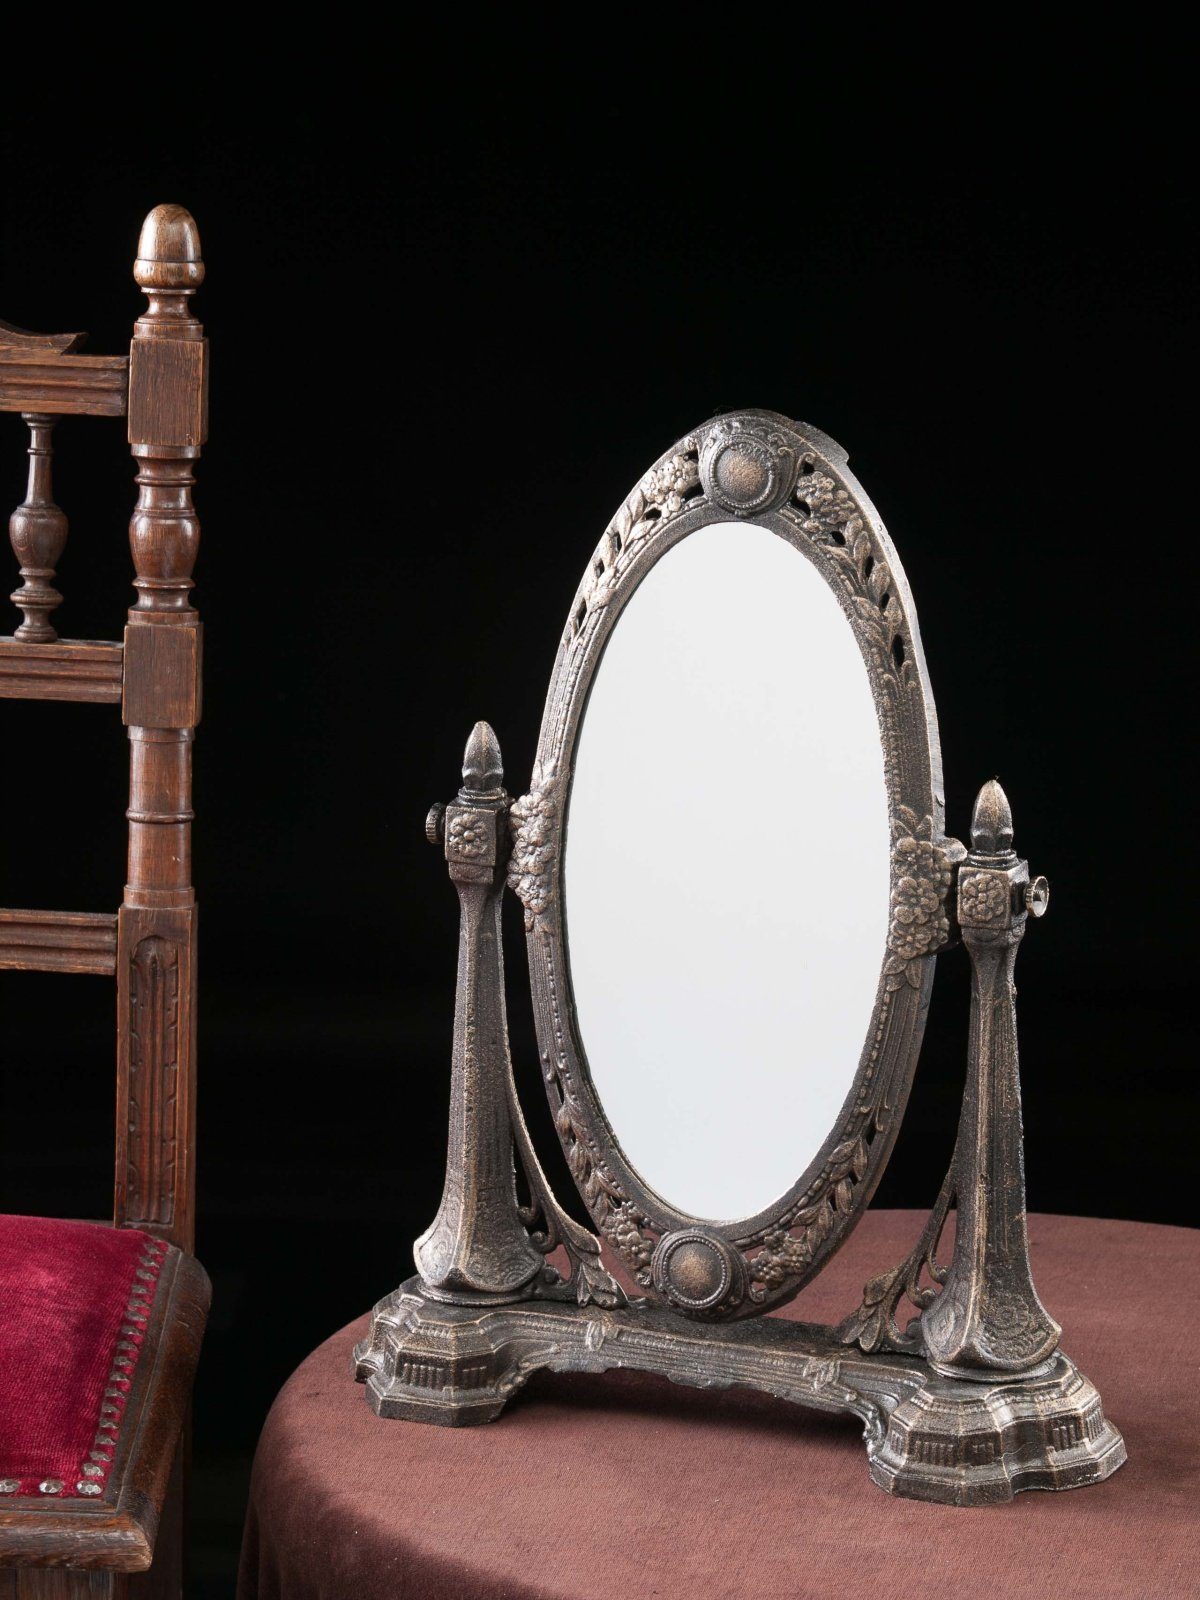 Aubaho Standspiegel Spiegel Schminkspiegel antik i Jugendstil Eisen Kosmetikspiegel mirror